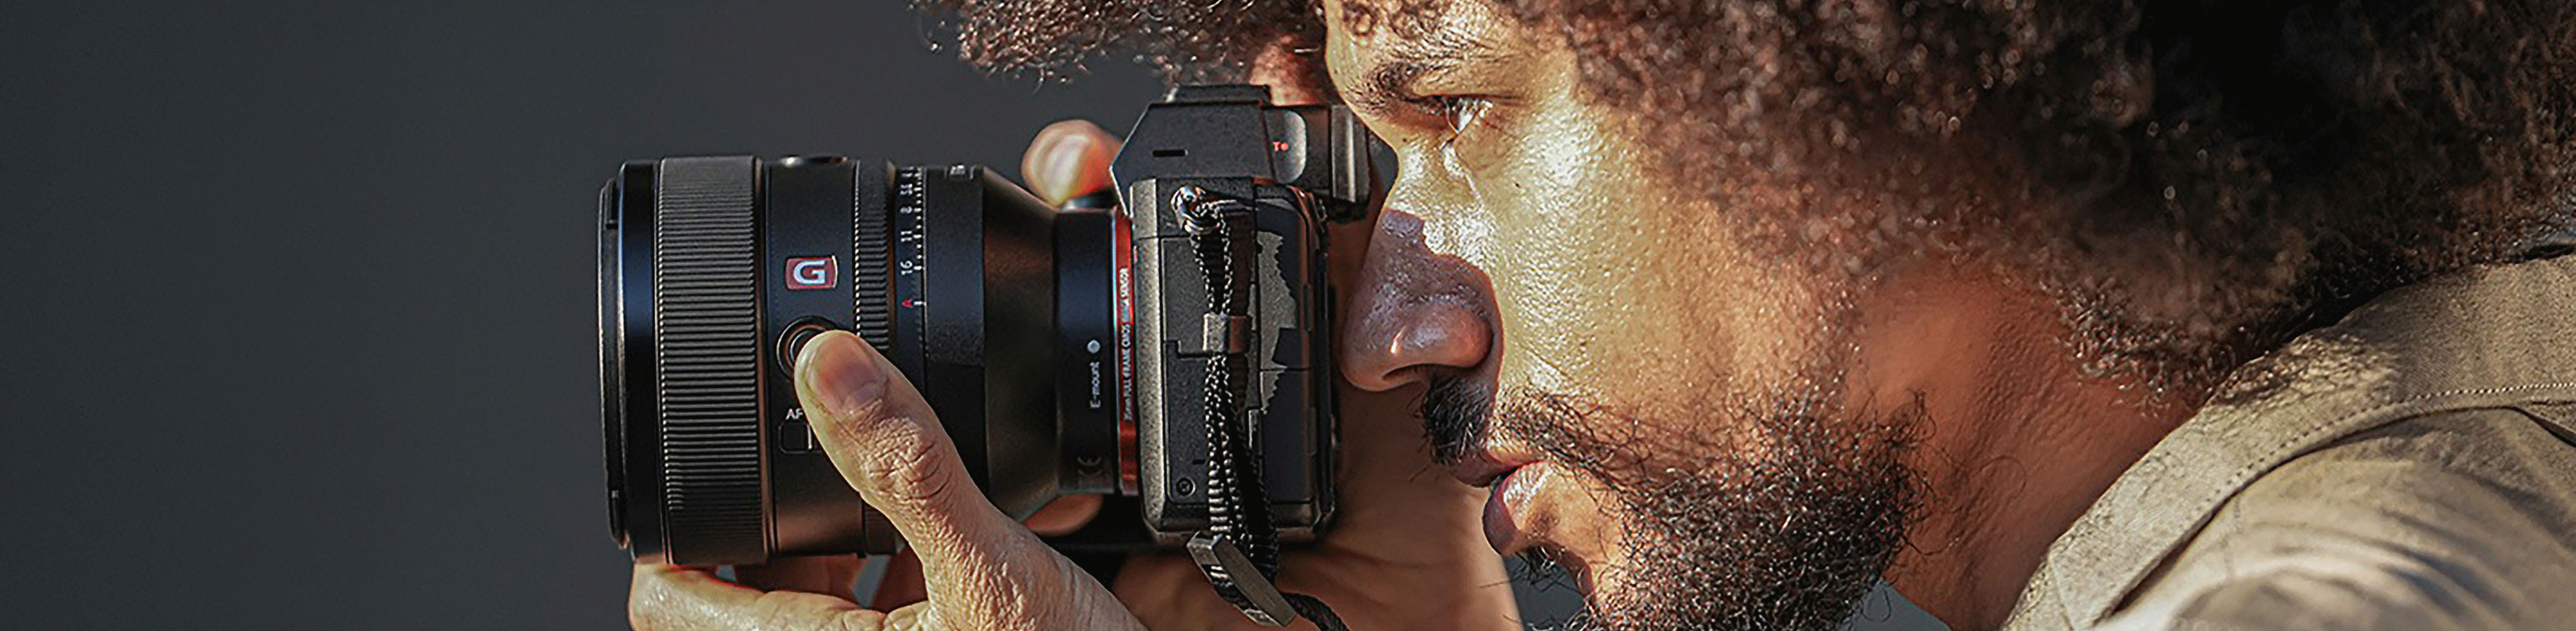 Изображение человека, который держит камеру с подсоединенным объективом FE 50 мм f/1.2 GM